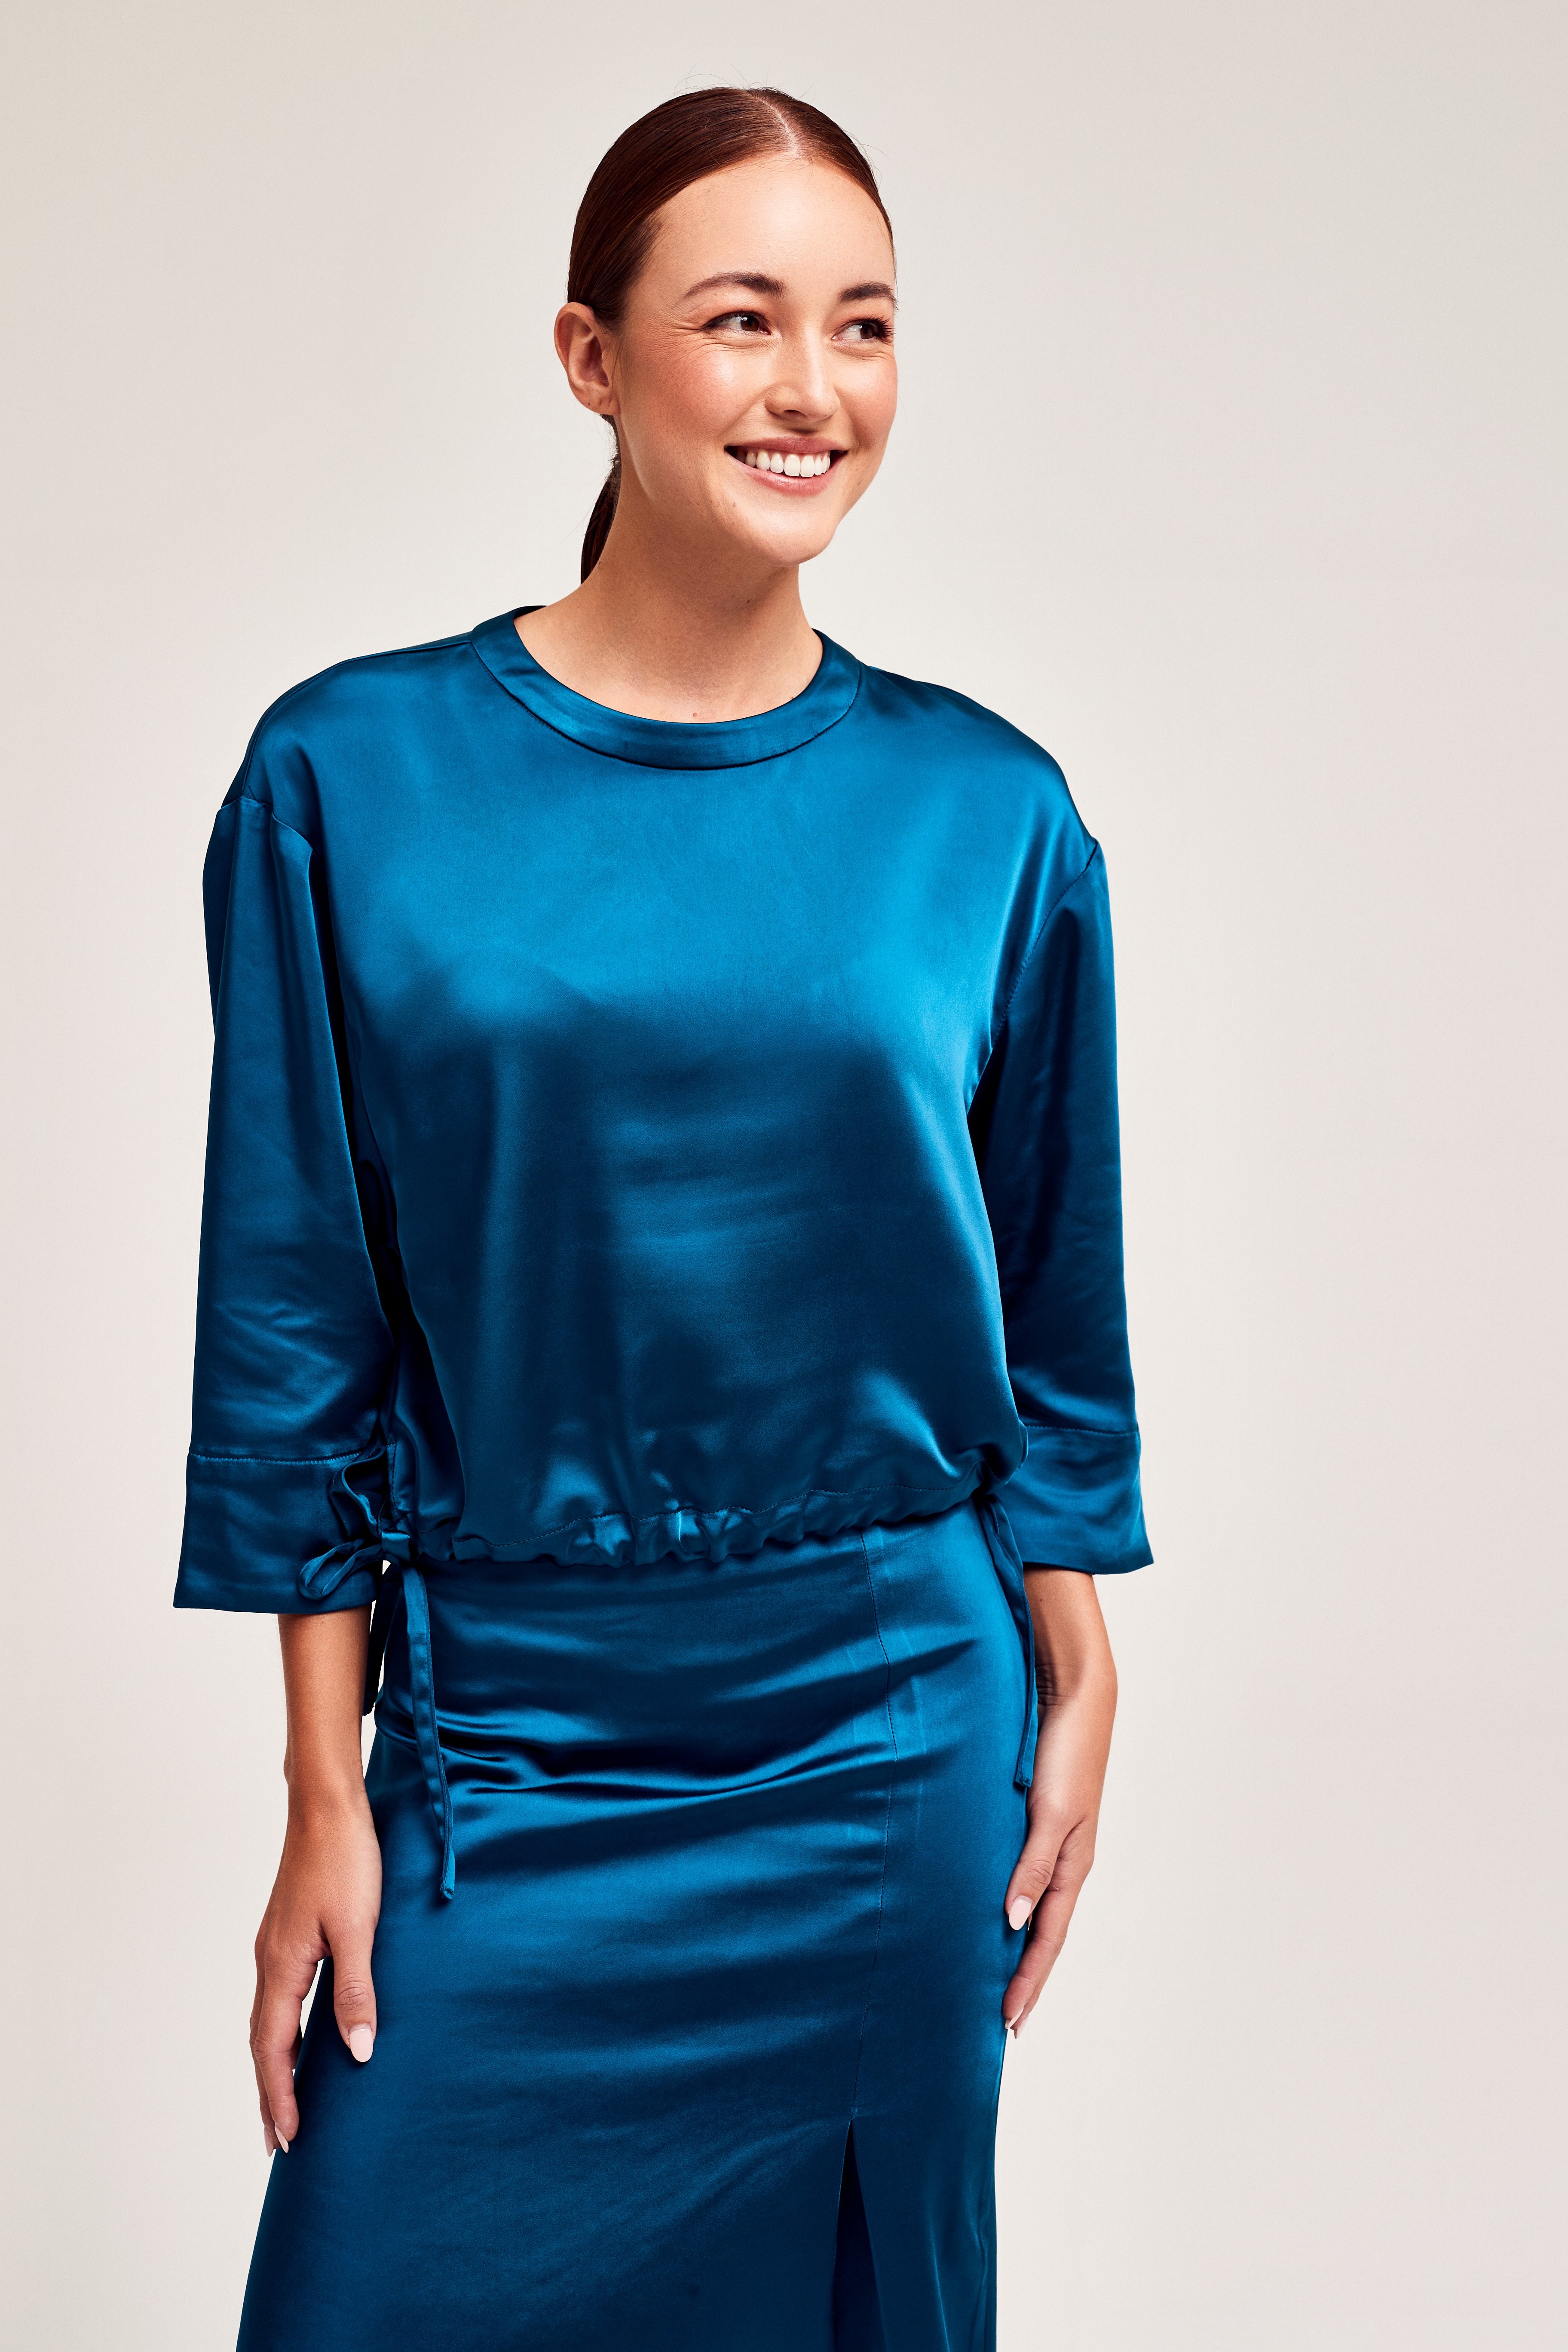 CKS Dames - SAYA - blouse lange mouwen - donkerblauw